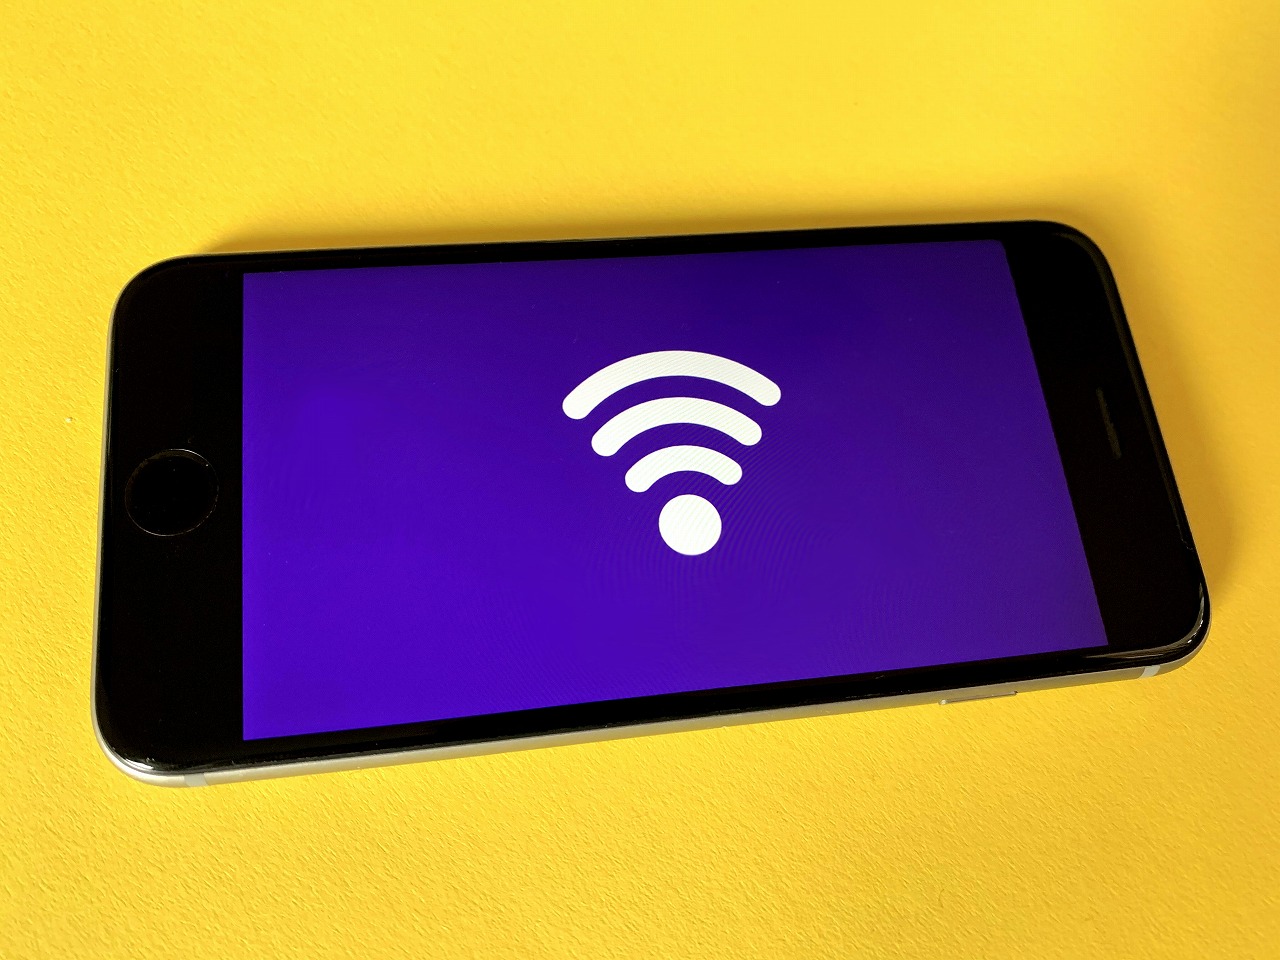 【おじさんデジタル講座】データ通信に革命を起こした「Wi-Fi」細かな技術は知らなくても便利ですよね。